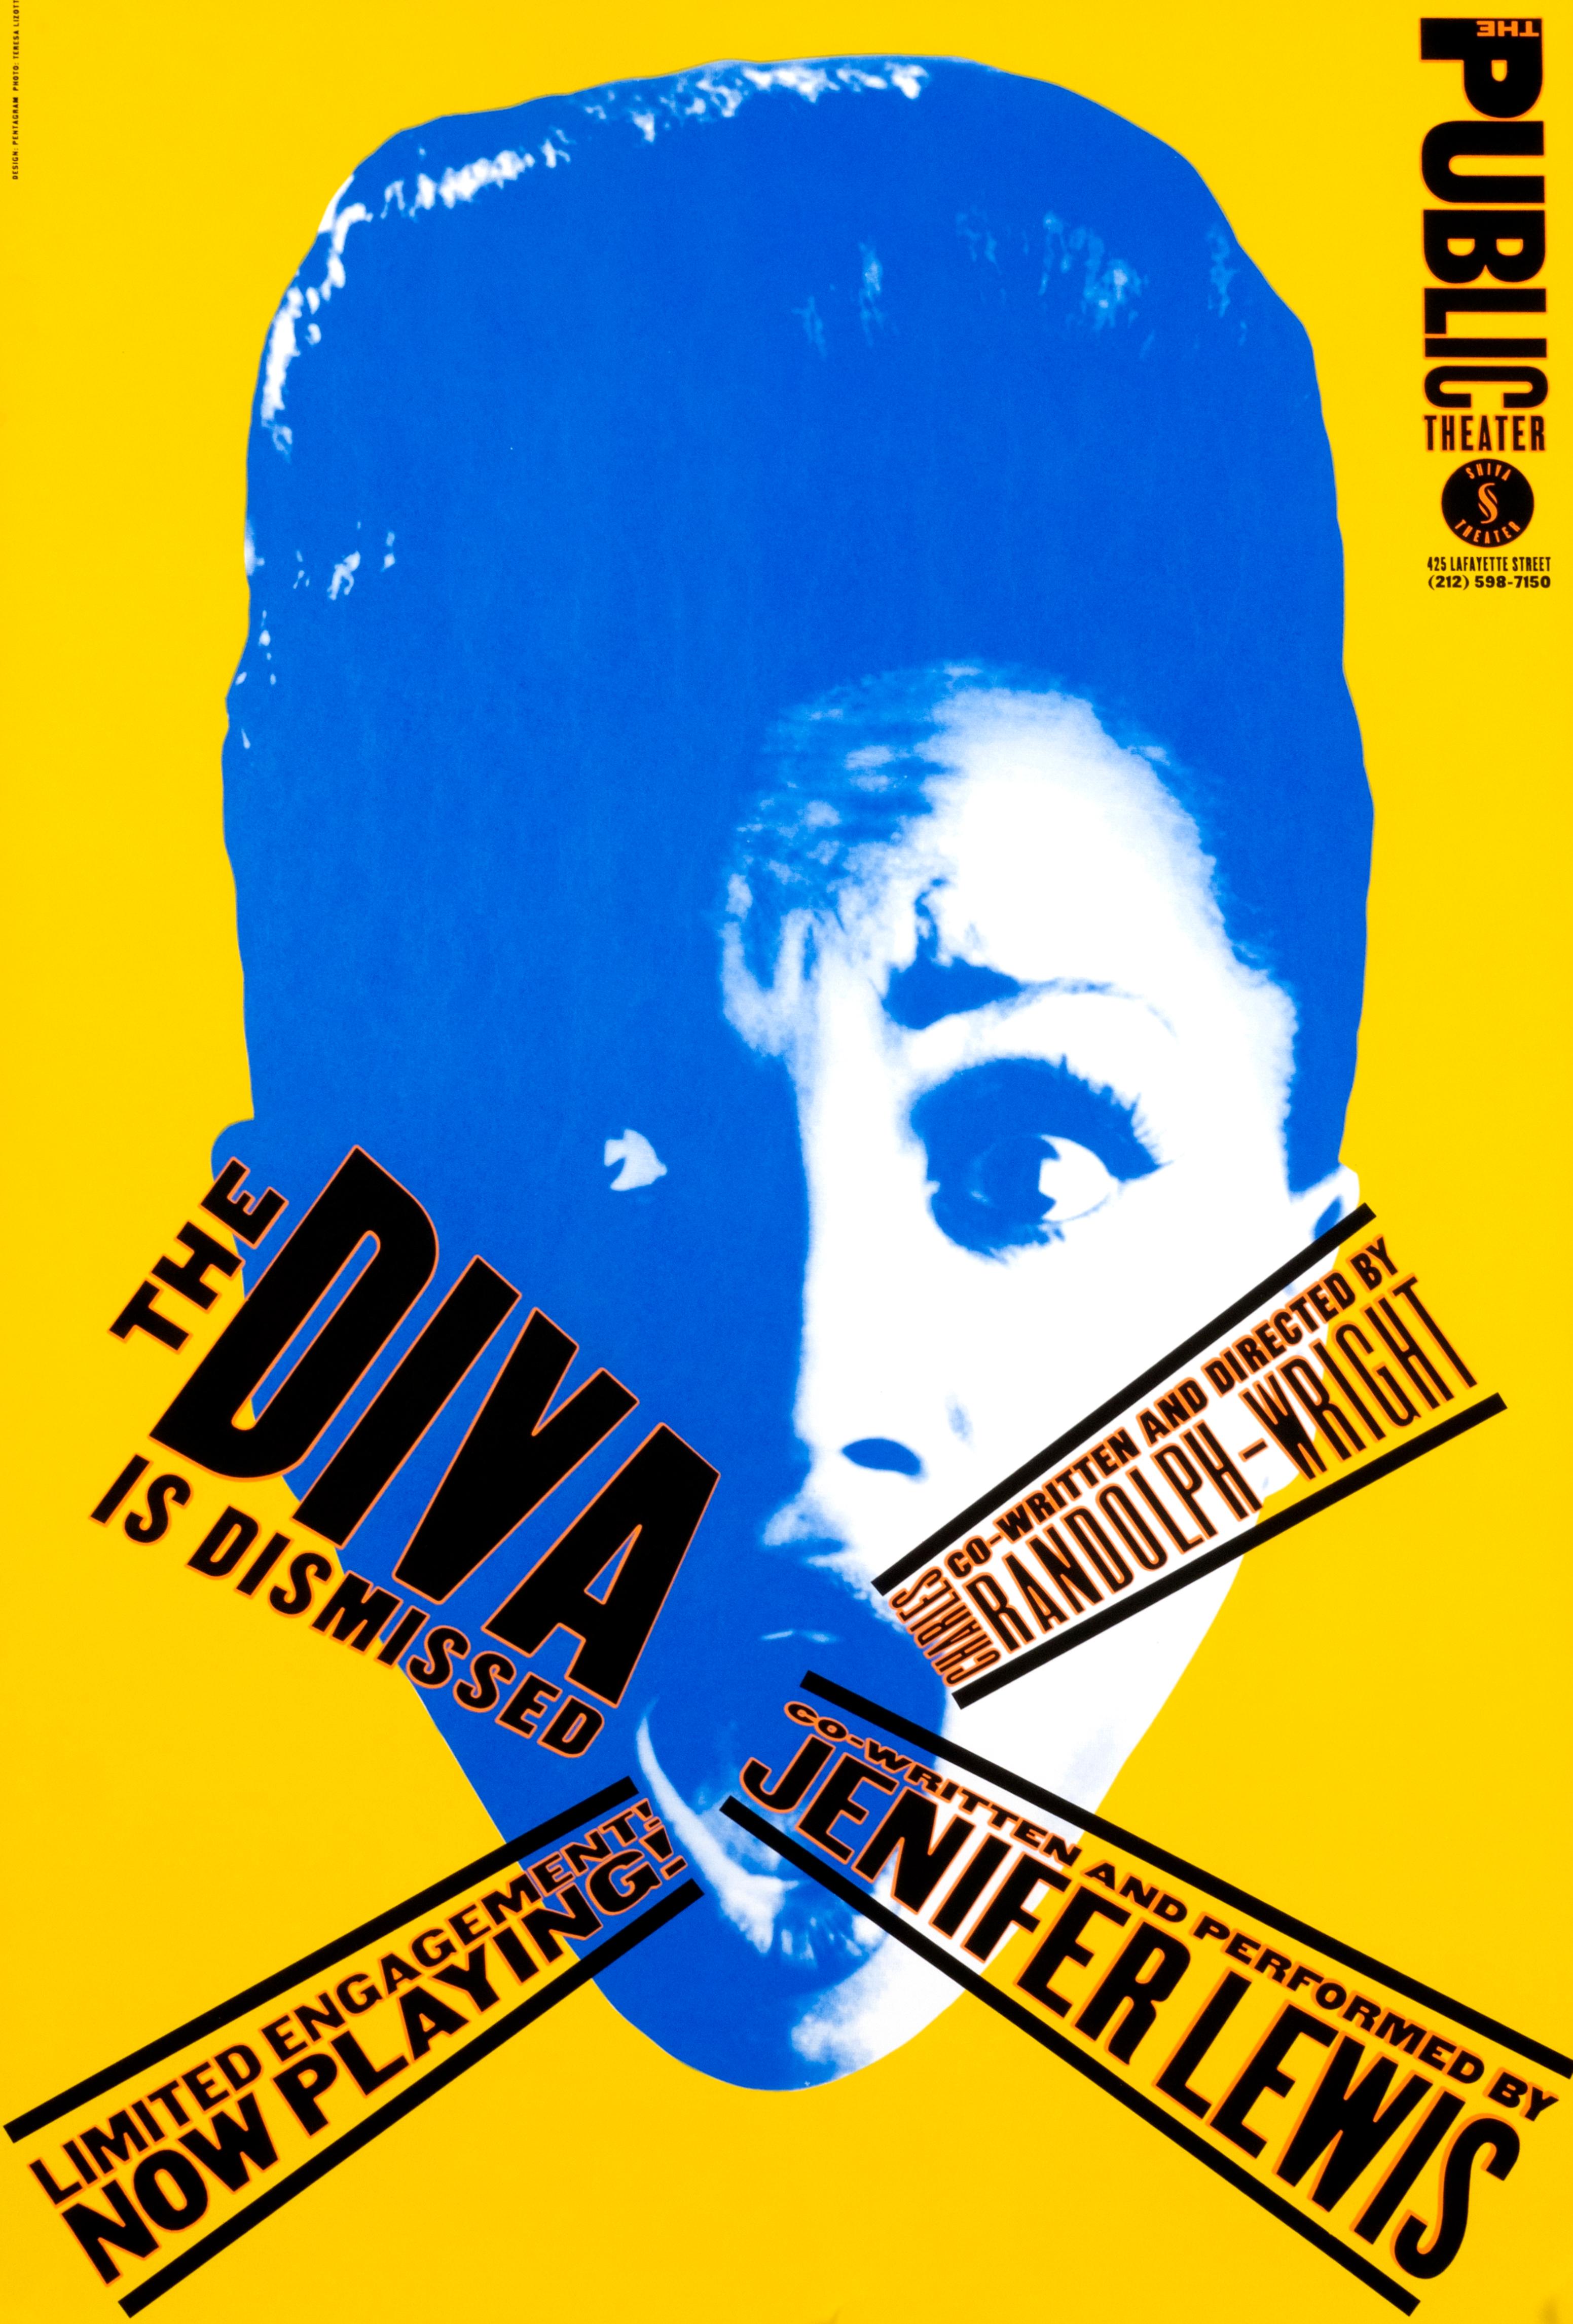 Affiche de théâtre originale vintage « The Diva is Dismissed - Public Theater » (La Diva est rejetée - Theater public) - Print de Paula Scher